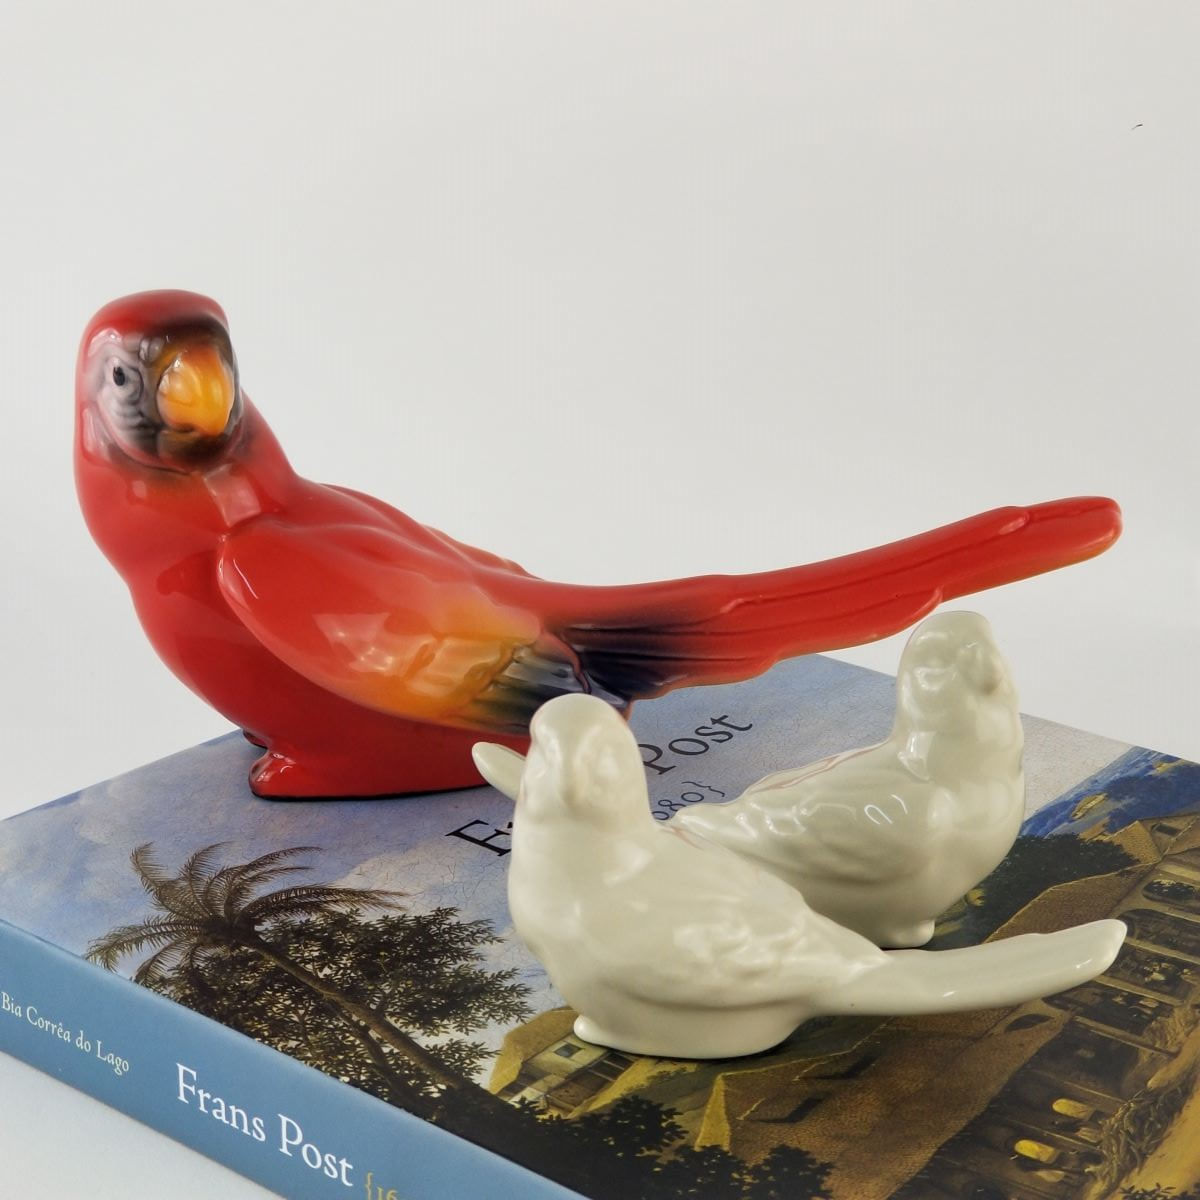 Arara Vermelha Decorativa - Pássaro Ornamento em Cerâmica